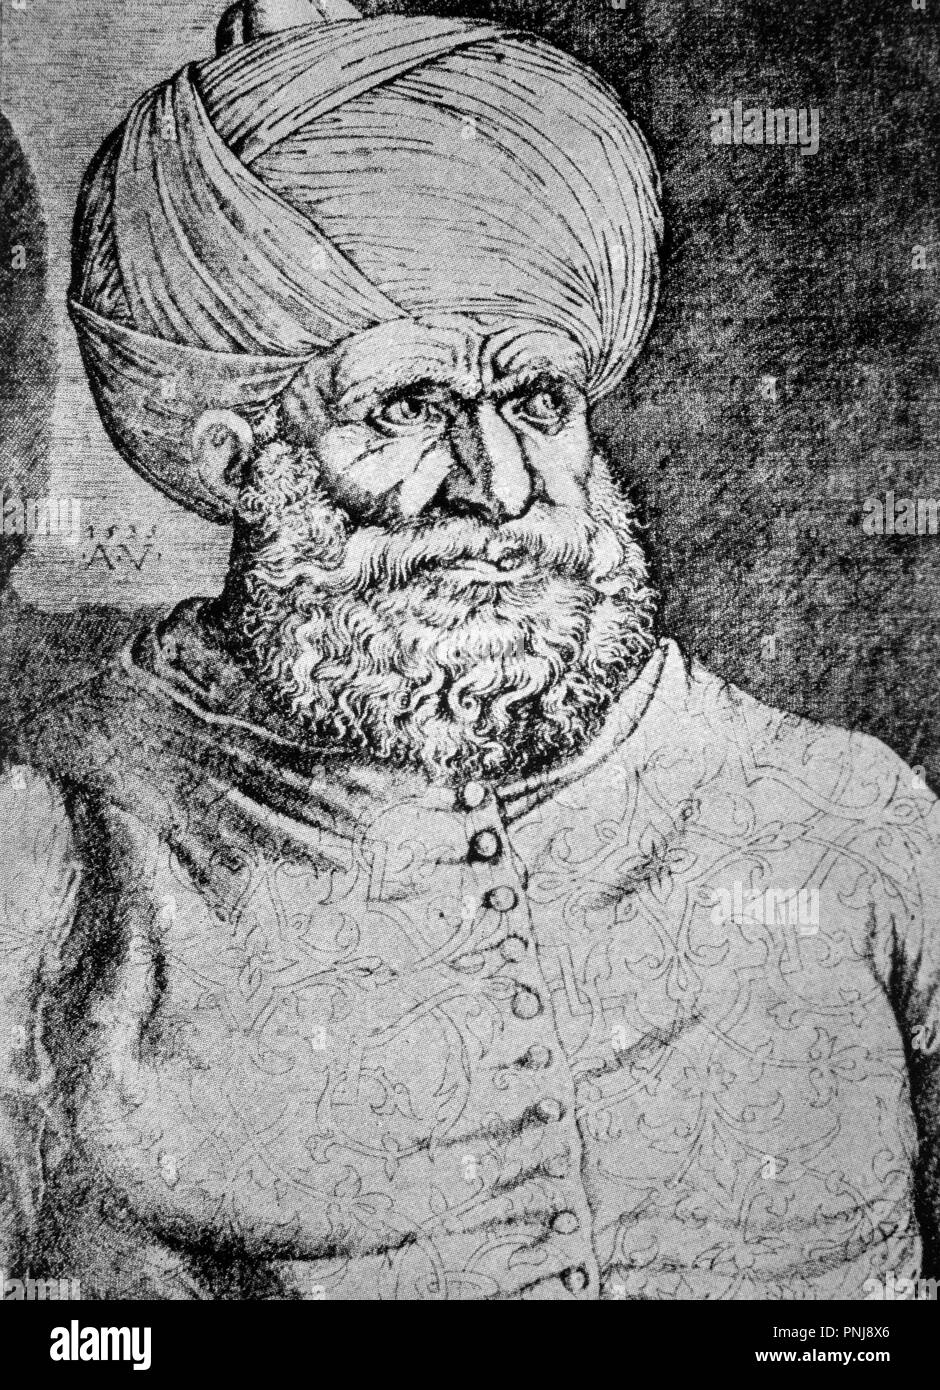 Jeireddín Barbarroja. Corsario berberisco, que sirvió como almirante al Sultán Soliman El Magnífico. De un dibujo de A.Veneziano de 1535. Stock Photo